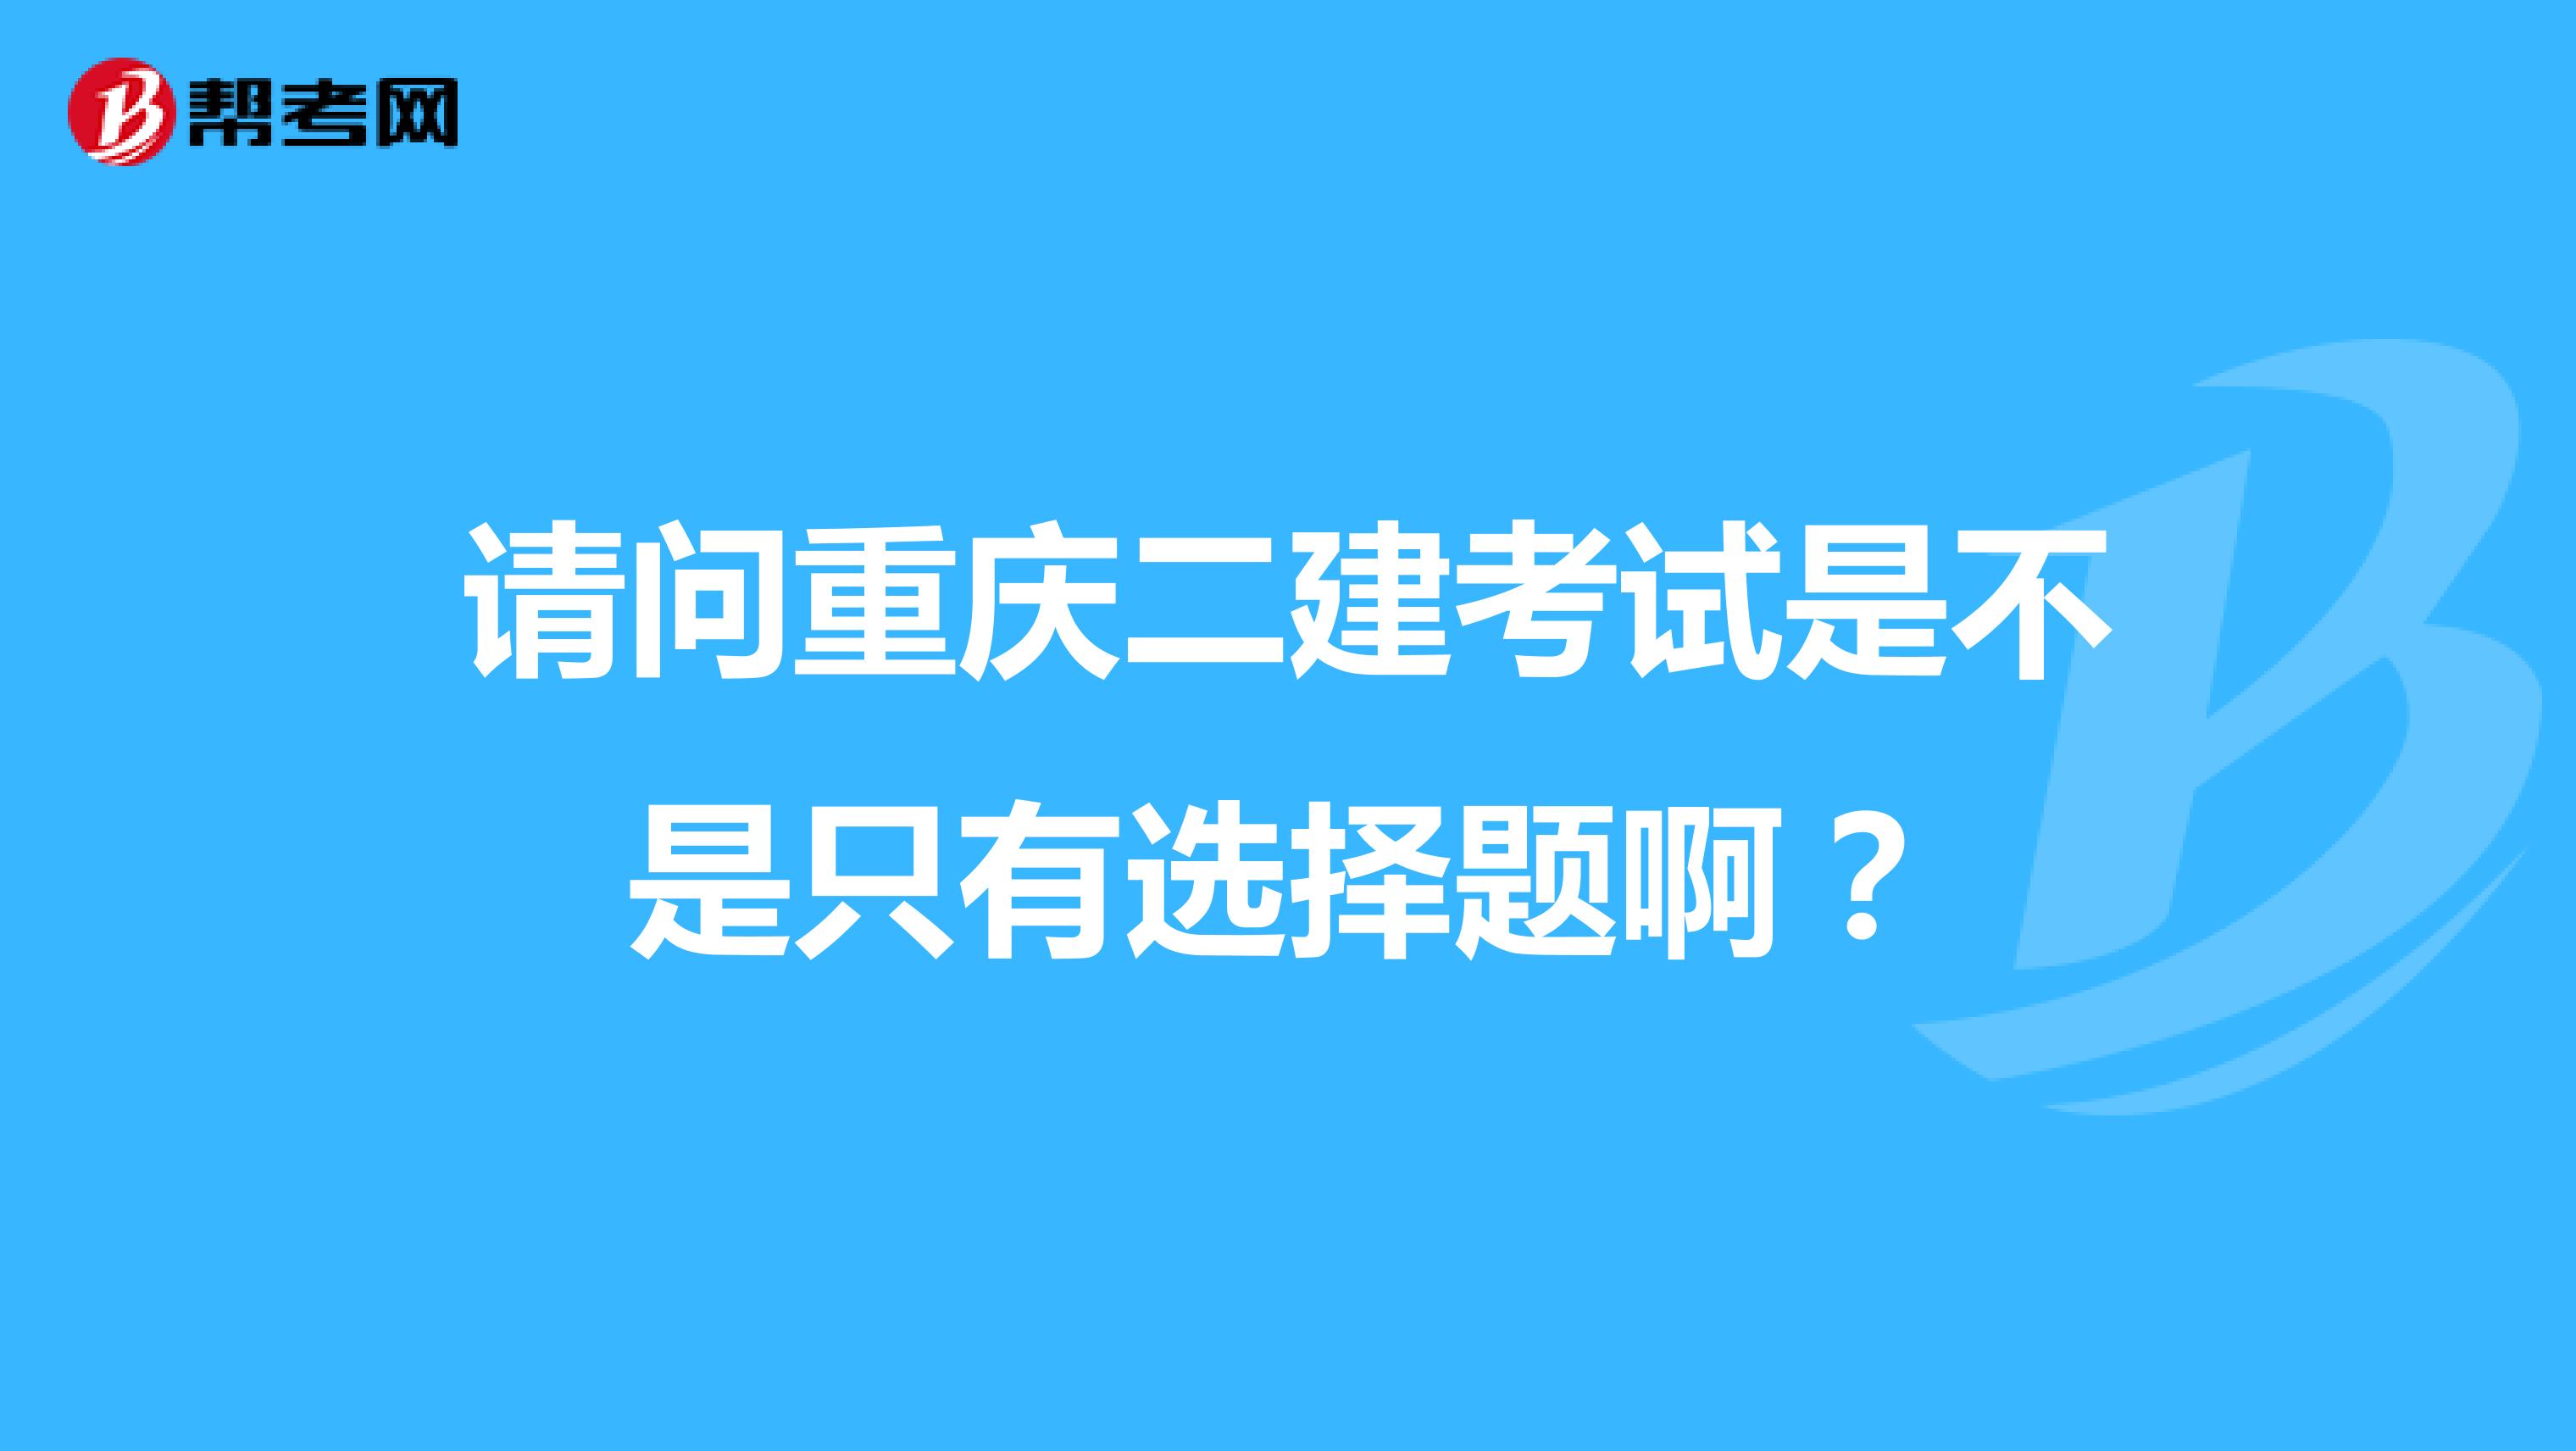 请问重庆二建考试是不是只有选择题啊？